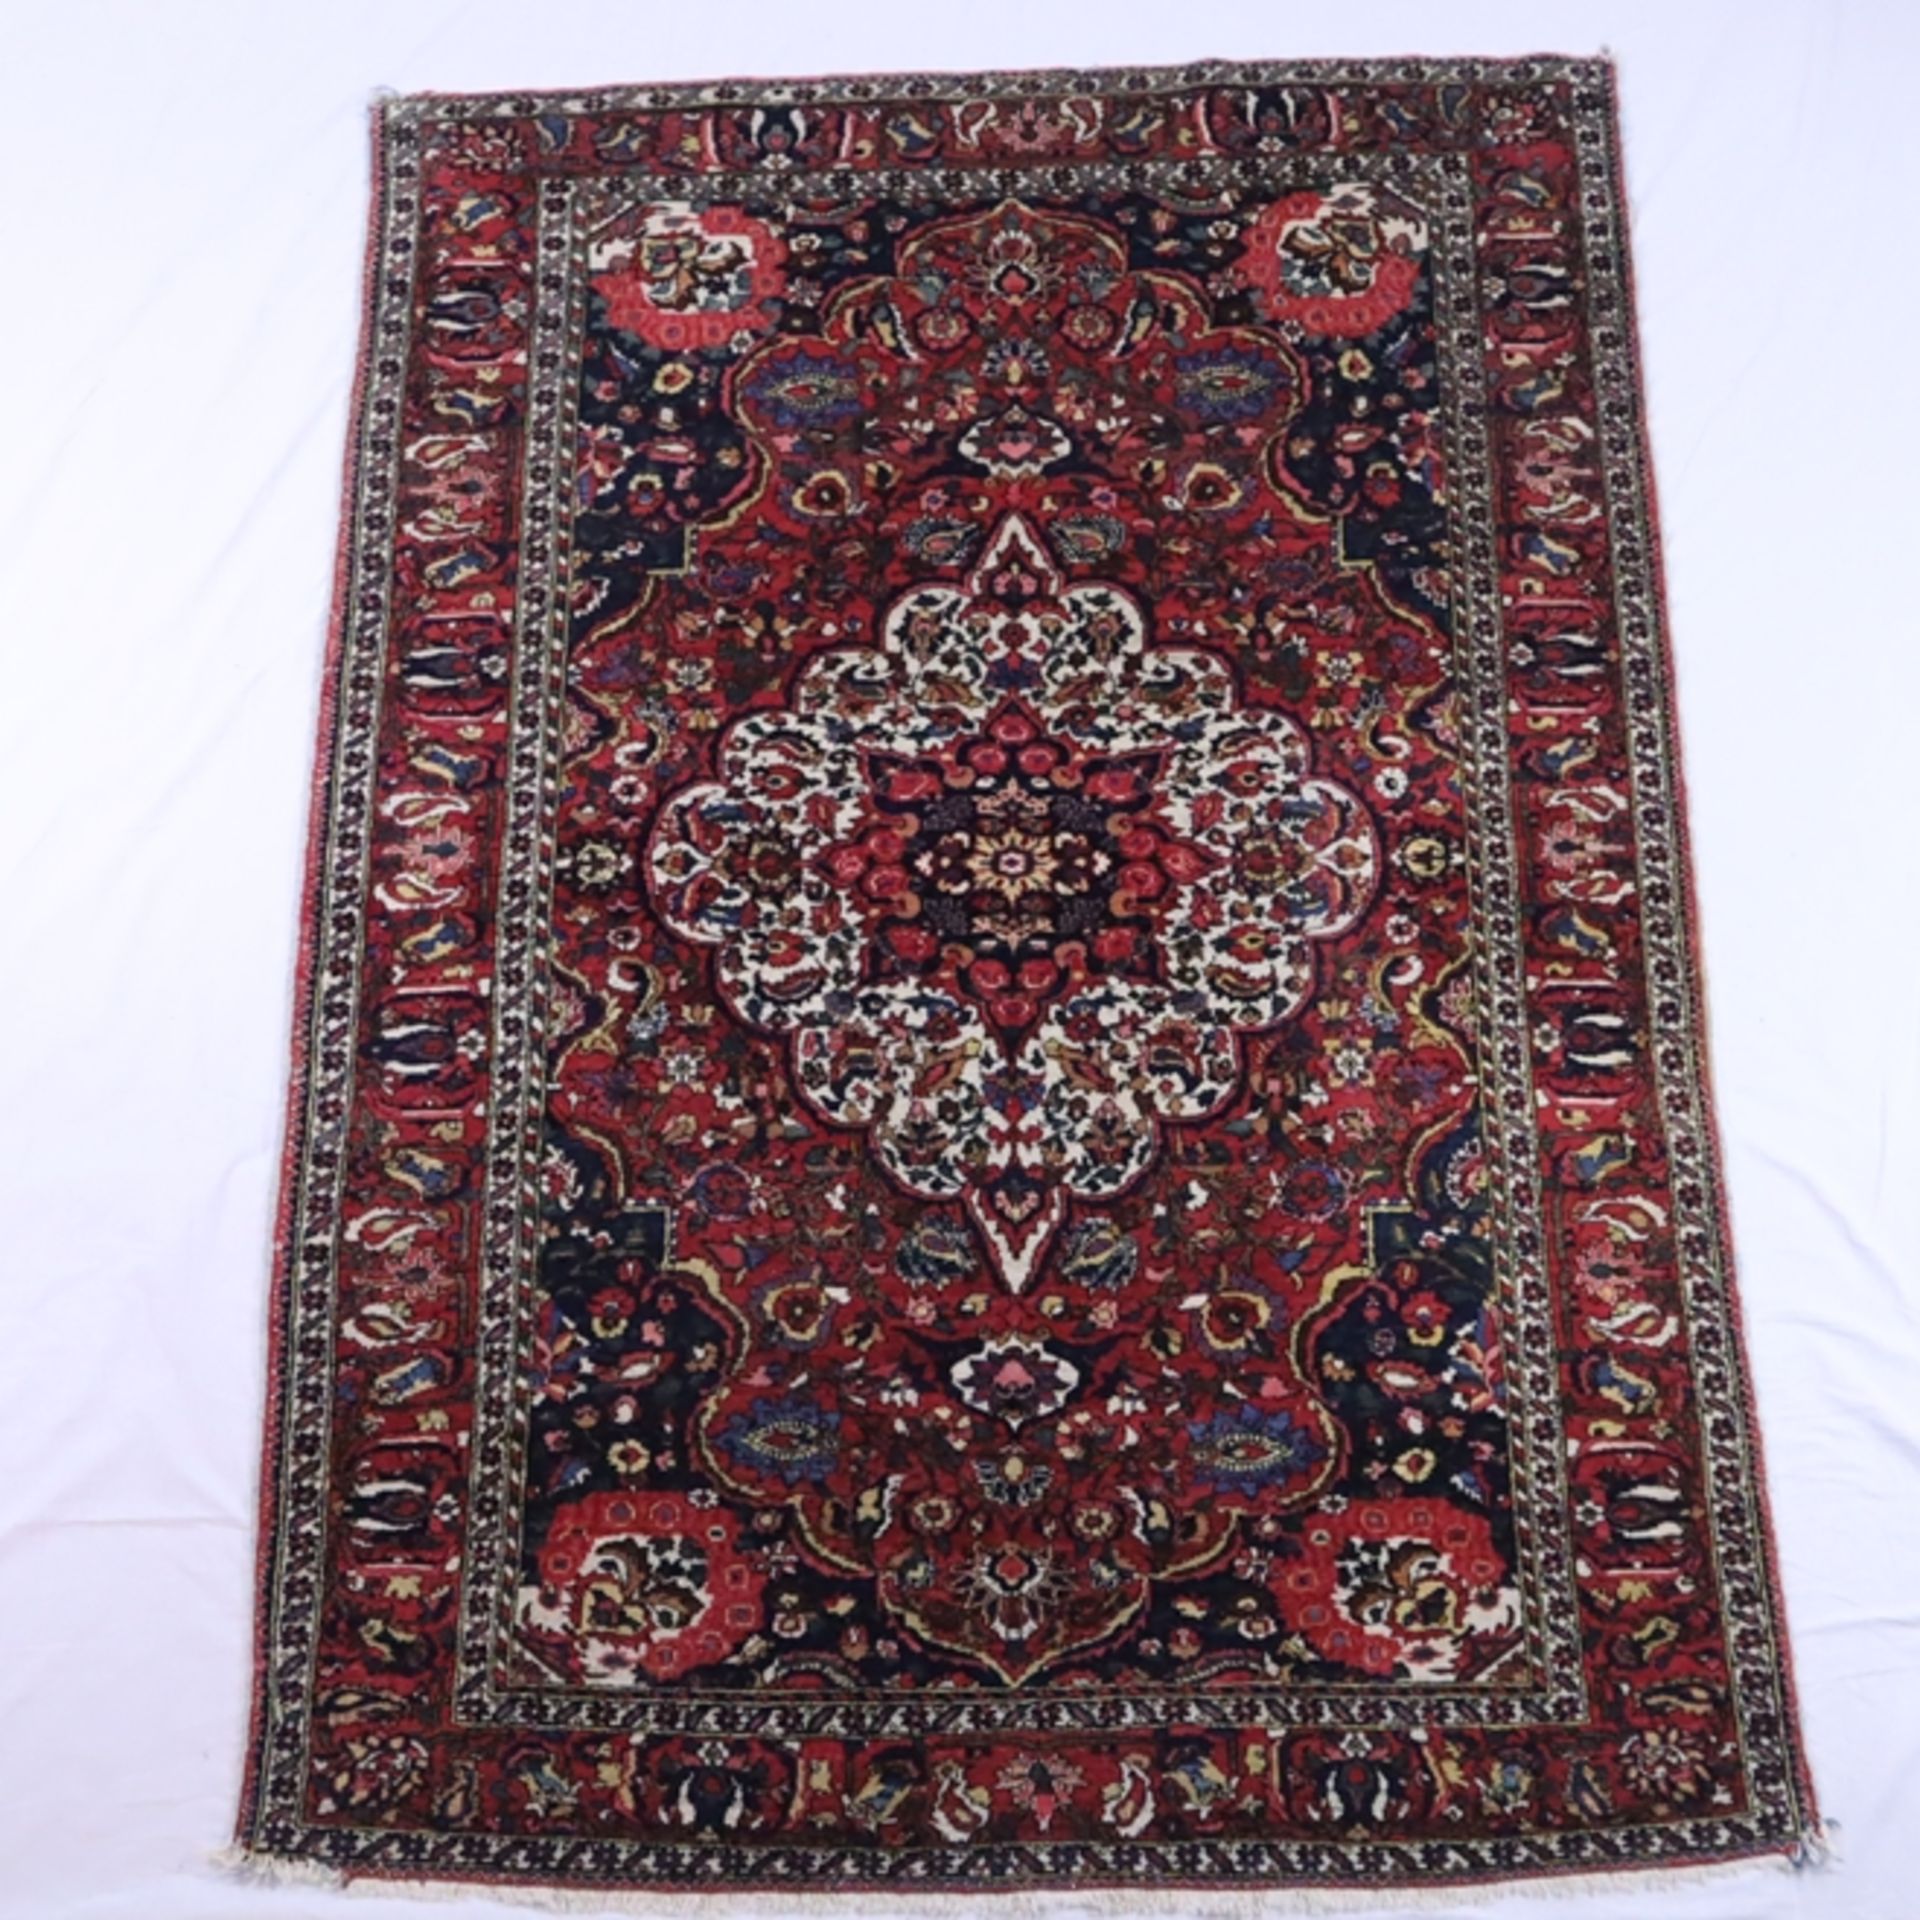 Orientteppich - Wolle, blau- und rotgrundig, zentrales Medaillon, ornamentales und florales Muster,